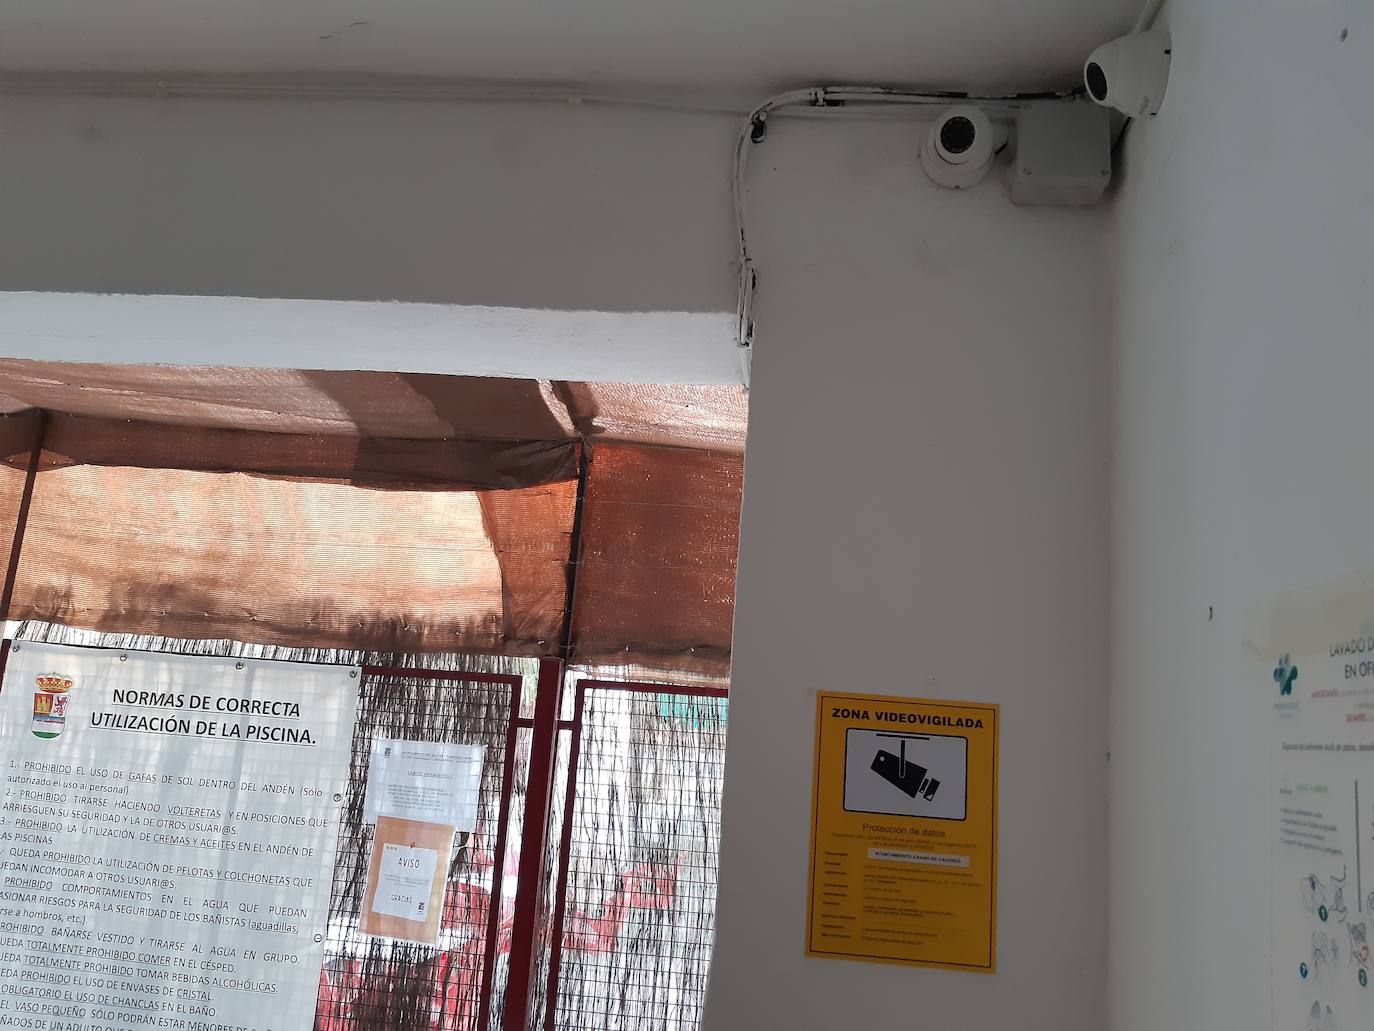 El recinto de la piscina municipal cuenta ya con cámaras de videovigilancia para prevenir el vandalismo